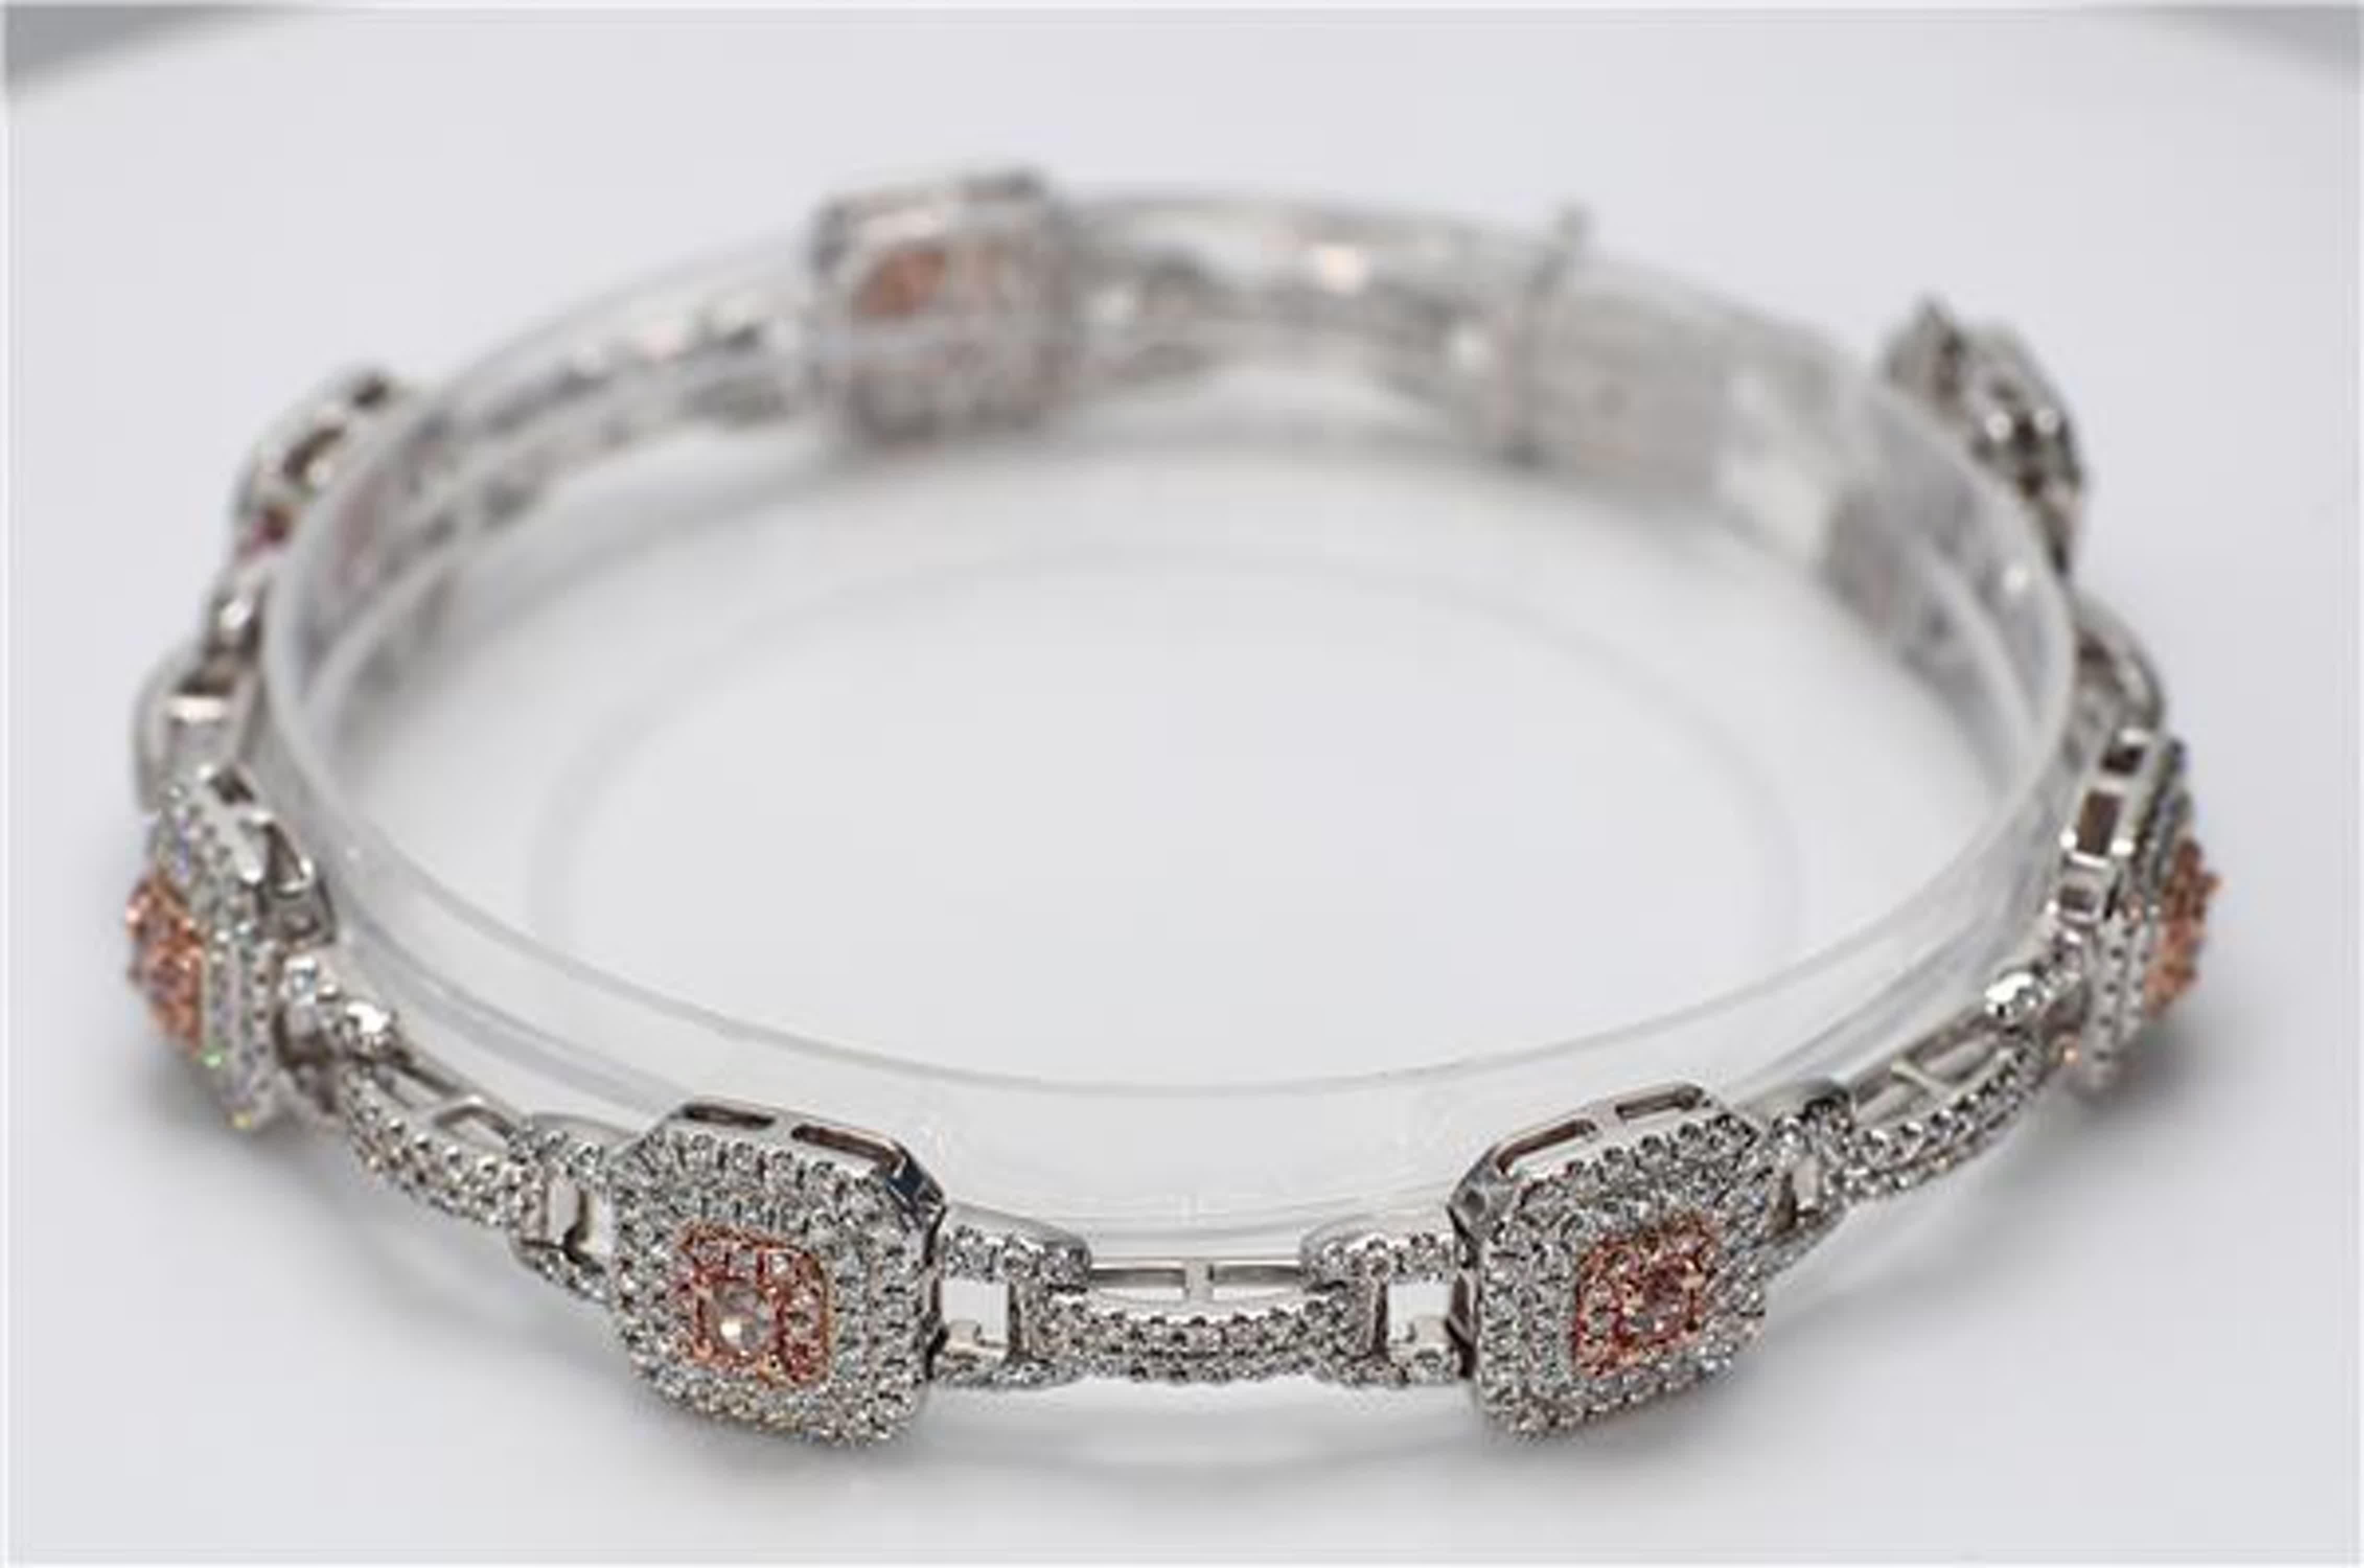 Das klassische Diamantarmband von RareGemWorld. In einer wunderschönen Fassung aus 18 Karat Rosé- und Weißgold mit natürlichen rosa Diamanten im Brillantschliff gefasst. Die rosafarbenen Diamanten sind von kleinen runden weißen Naturdiamanten und